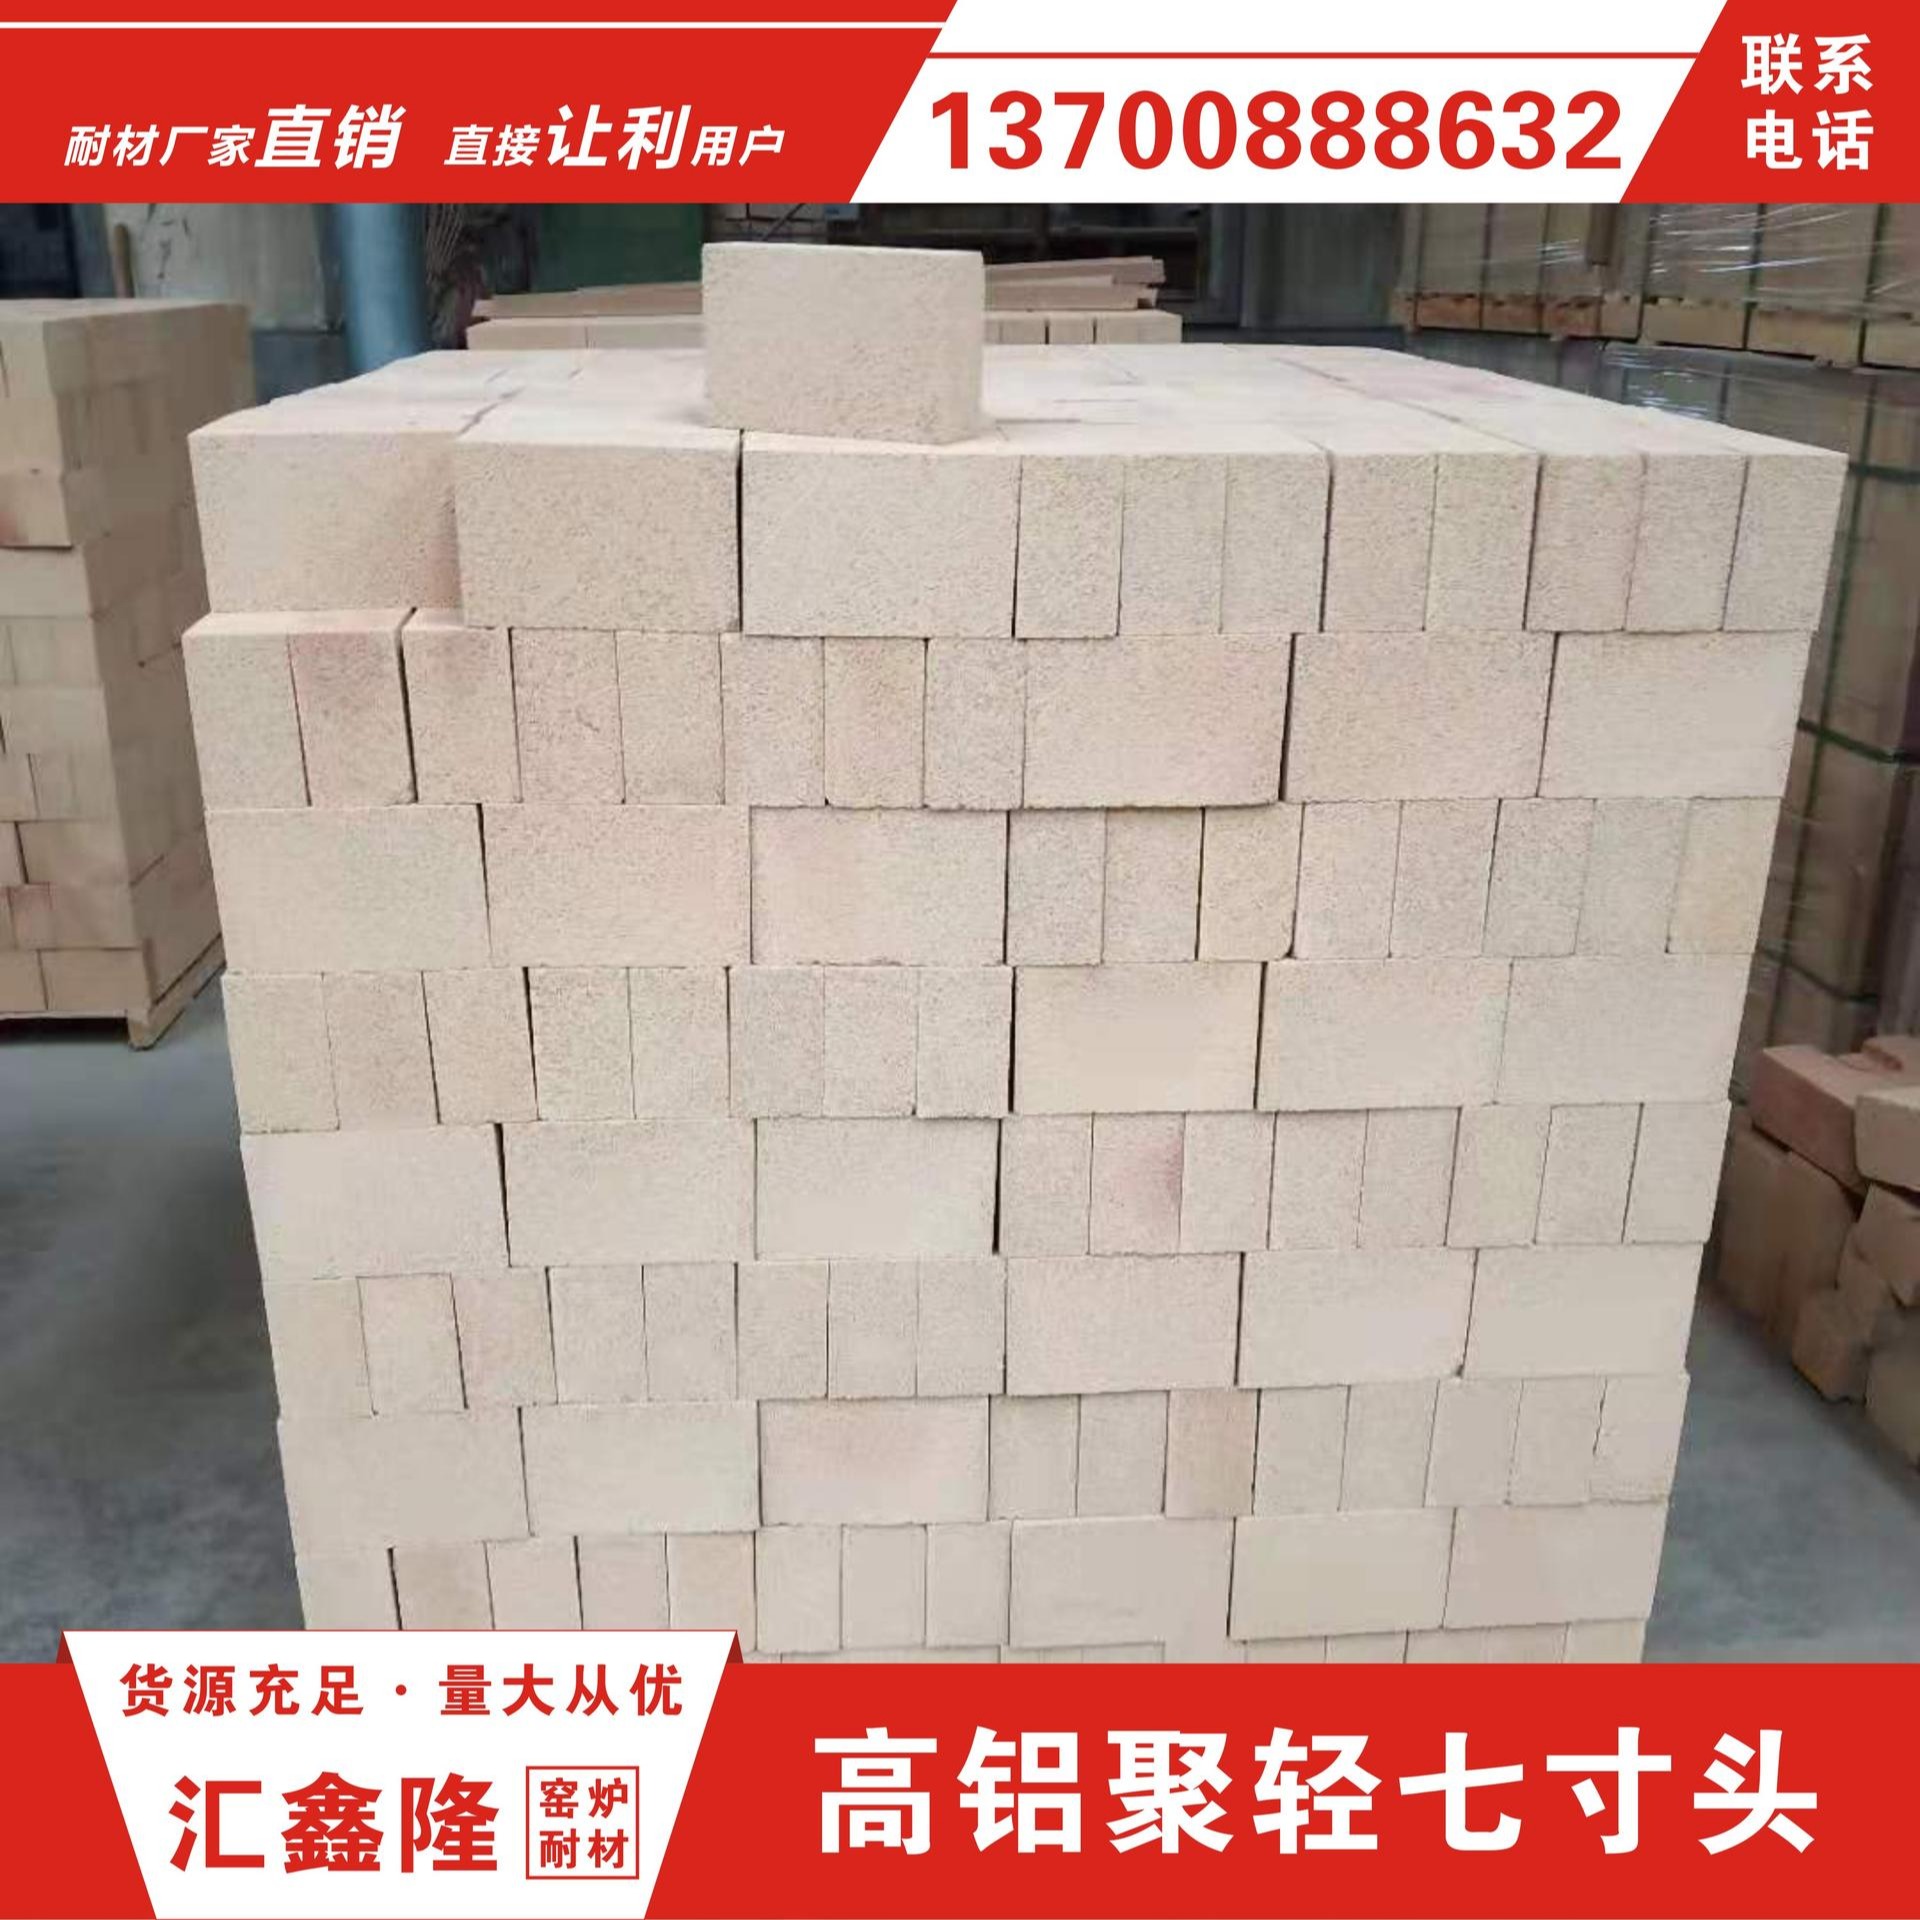 河南耐火材料厂 专业生产高铝砖 耐高温 质量好 供货量大 高铝T-3耐火砖     T-3耐火砖是用途非常广泛的一